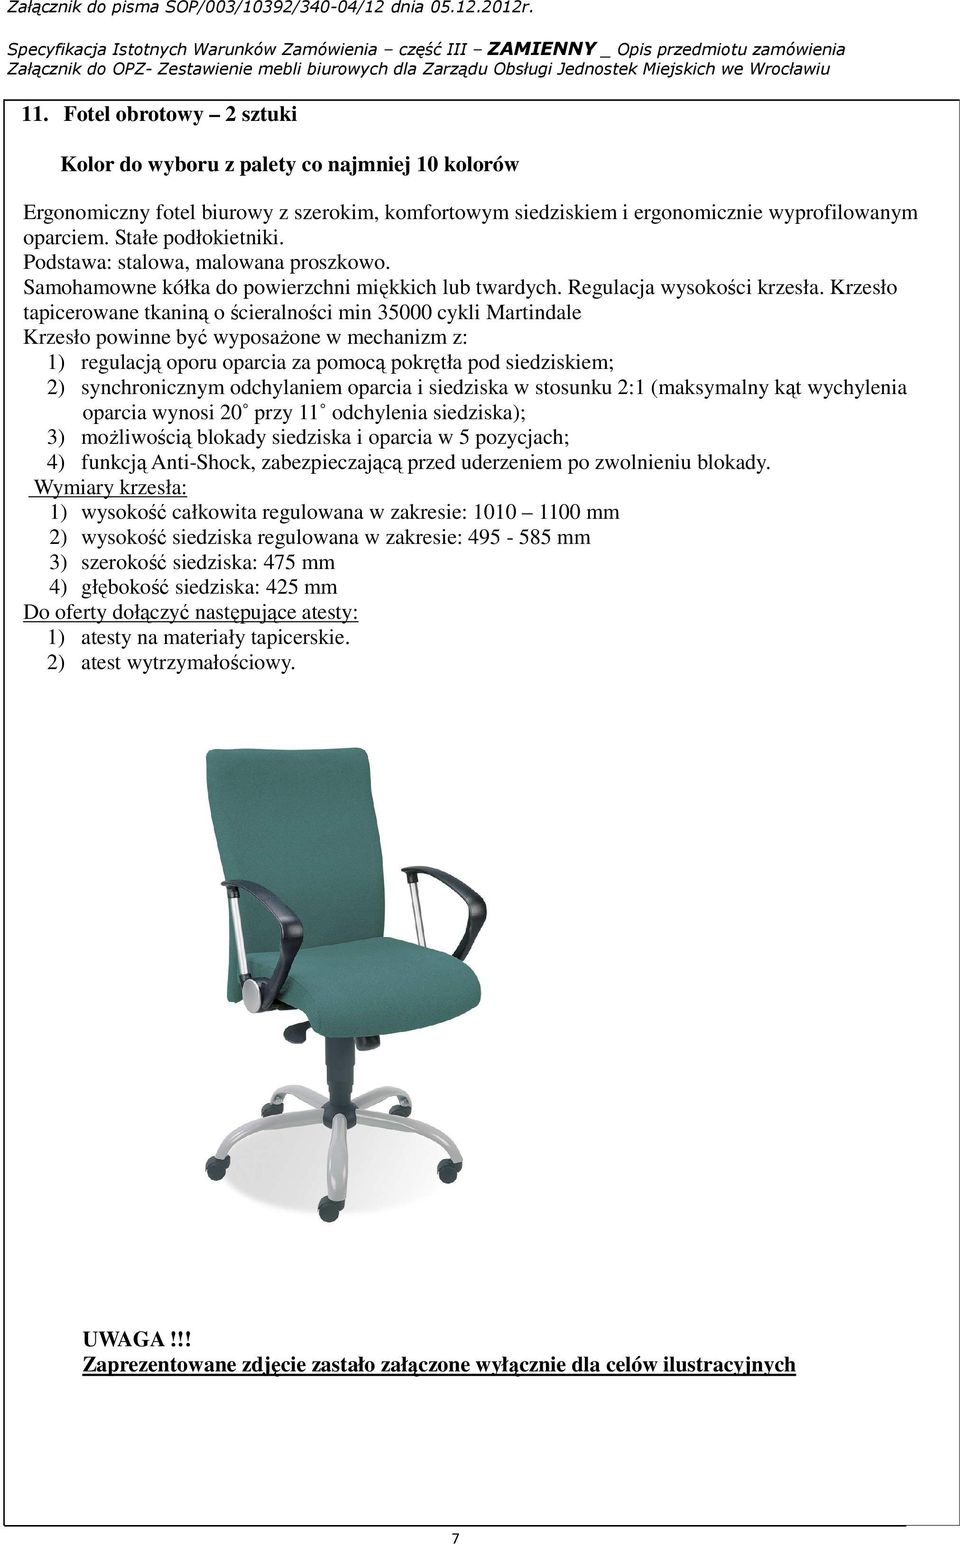 Krzesło tapicerowane tkaniną o ścieralności min 35000 cykli Martindale Krzesło powinne być wyposaŝone w mechanizm z: 1) regulacją oporu oparcia za pomocą pokrętła pod siedziskiem; 2) synchronicznym